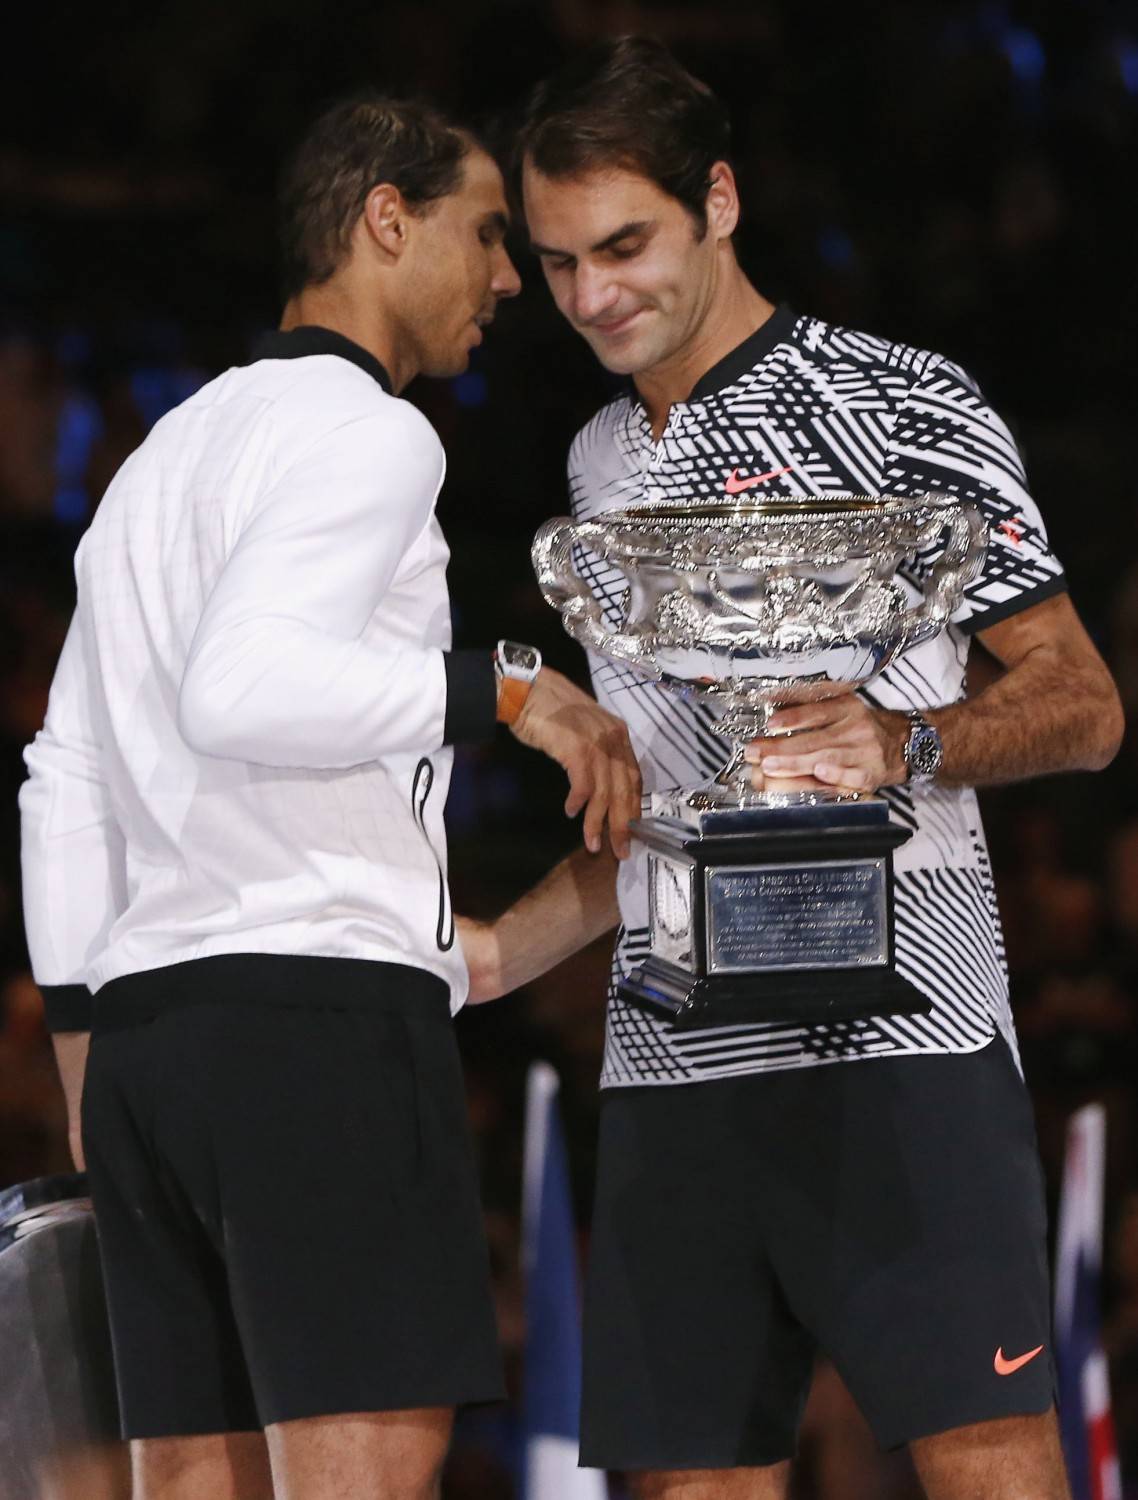 Nadal si inchina a Federer: "Ha meritato la vittoria"